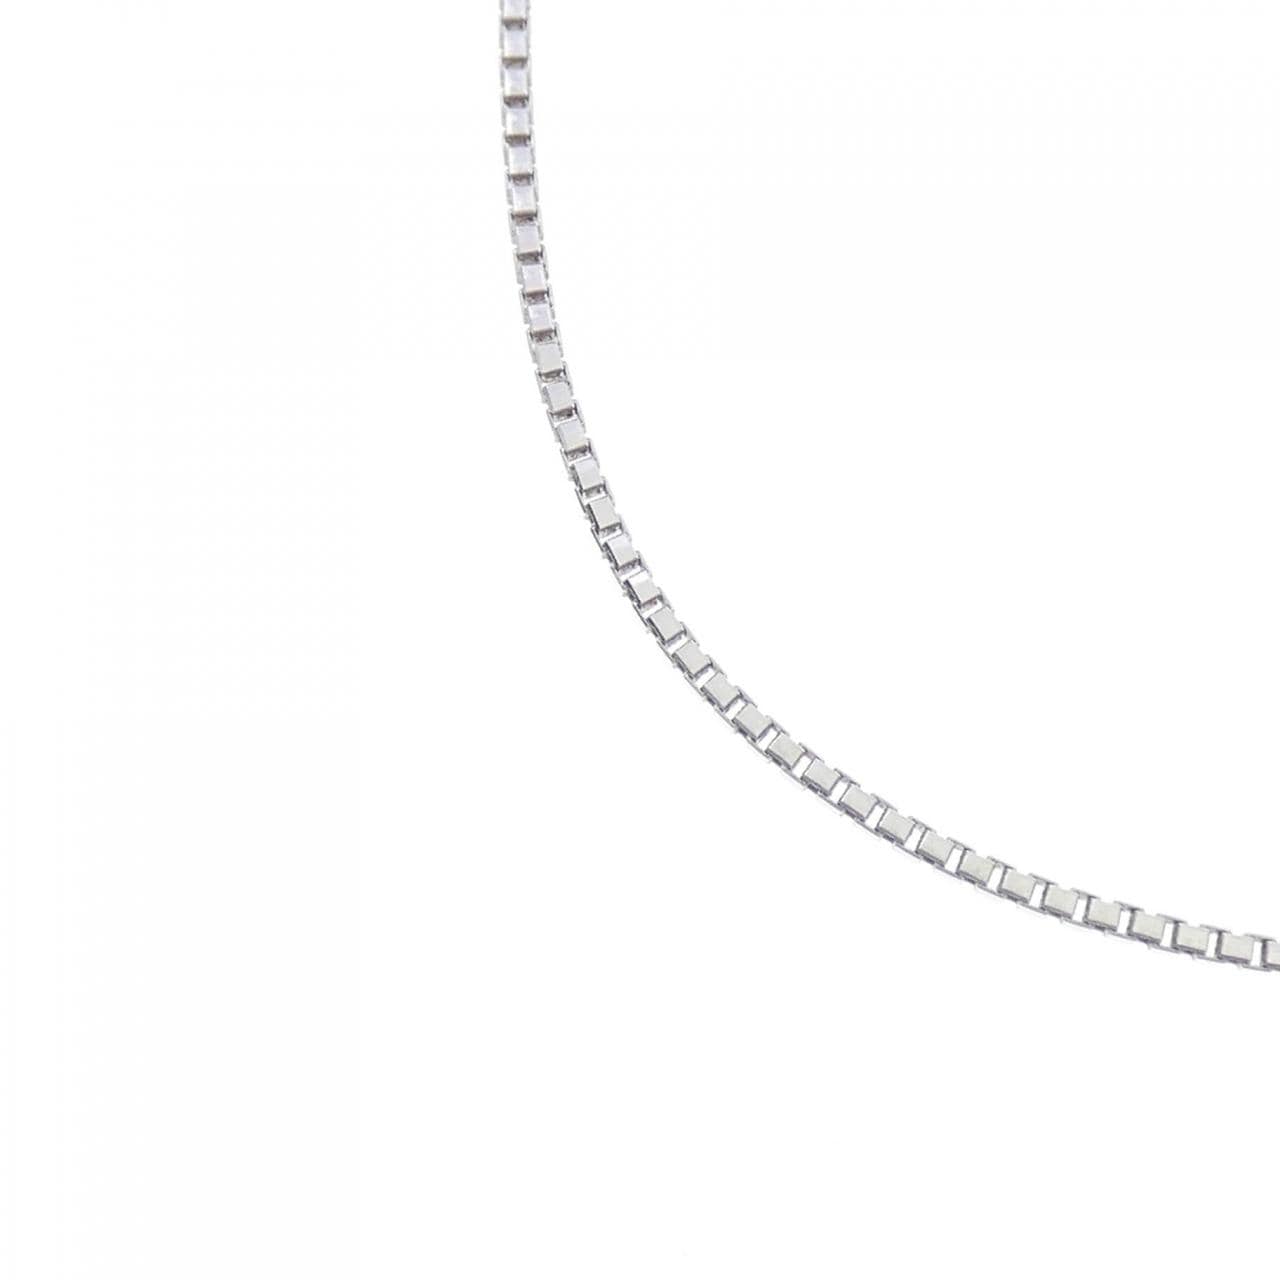 K18WG Venetian chain necklace